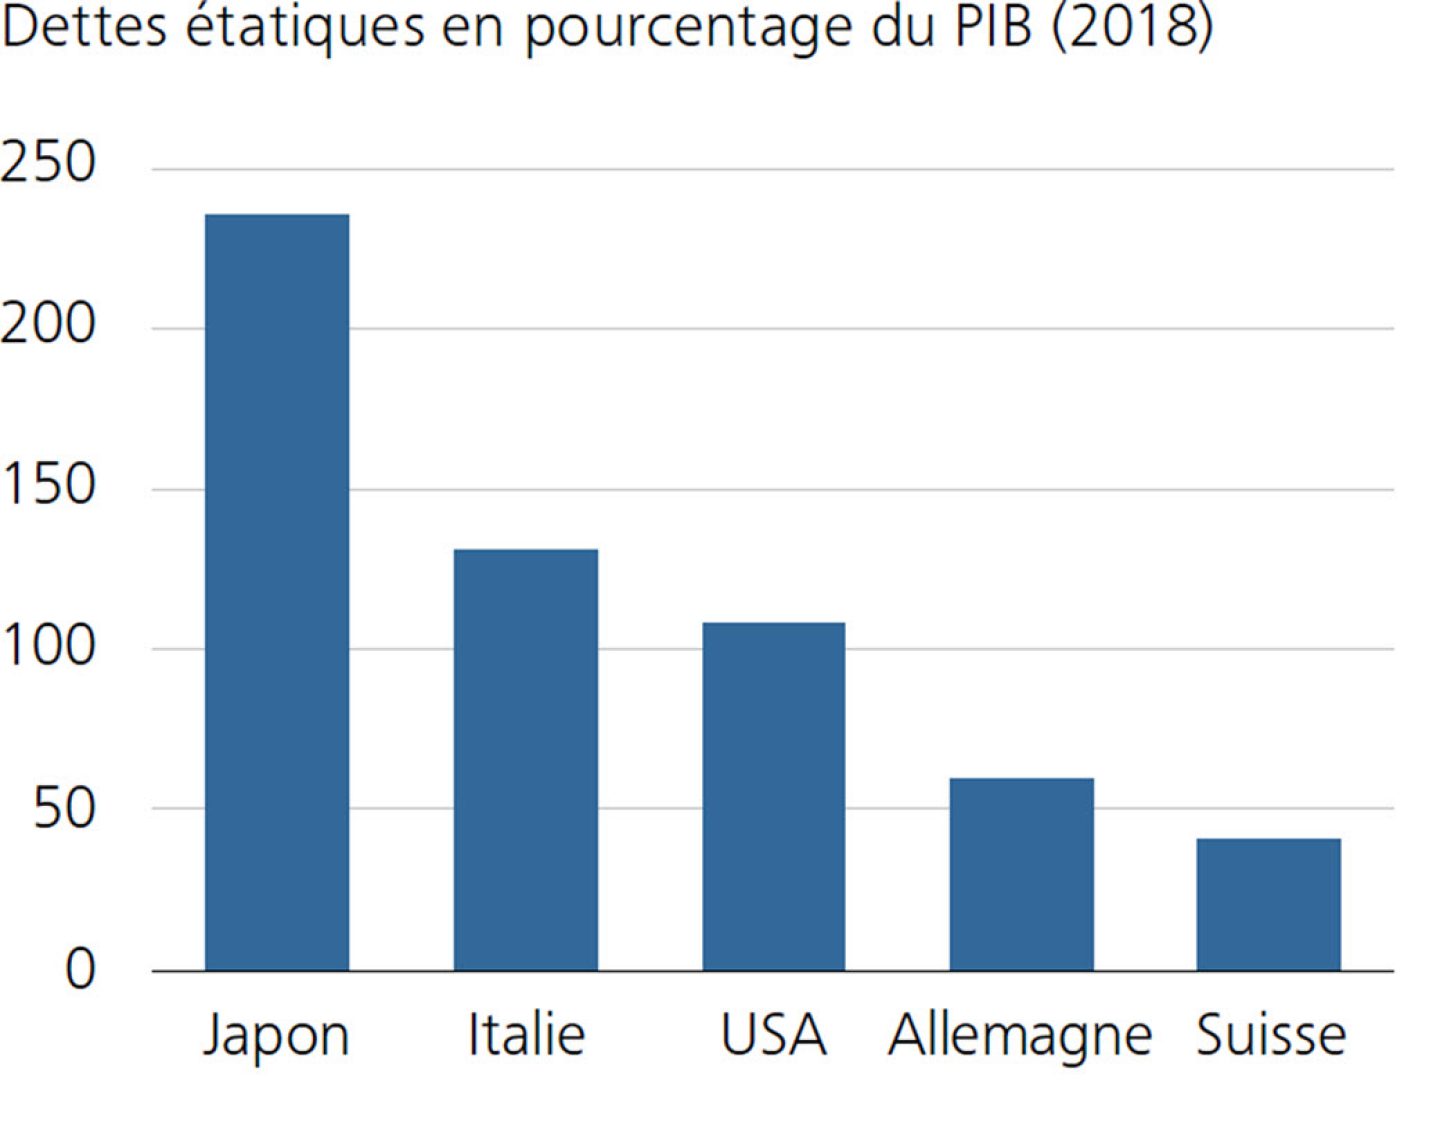 Dettes étatiques en pourcentage du PIB (2018)